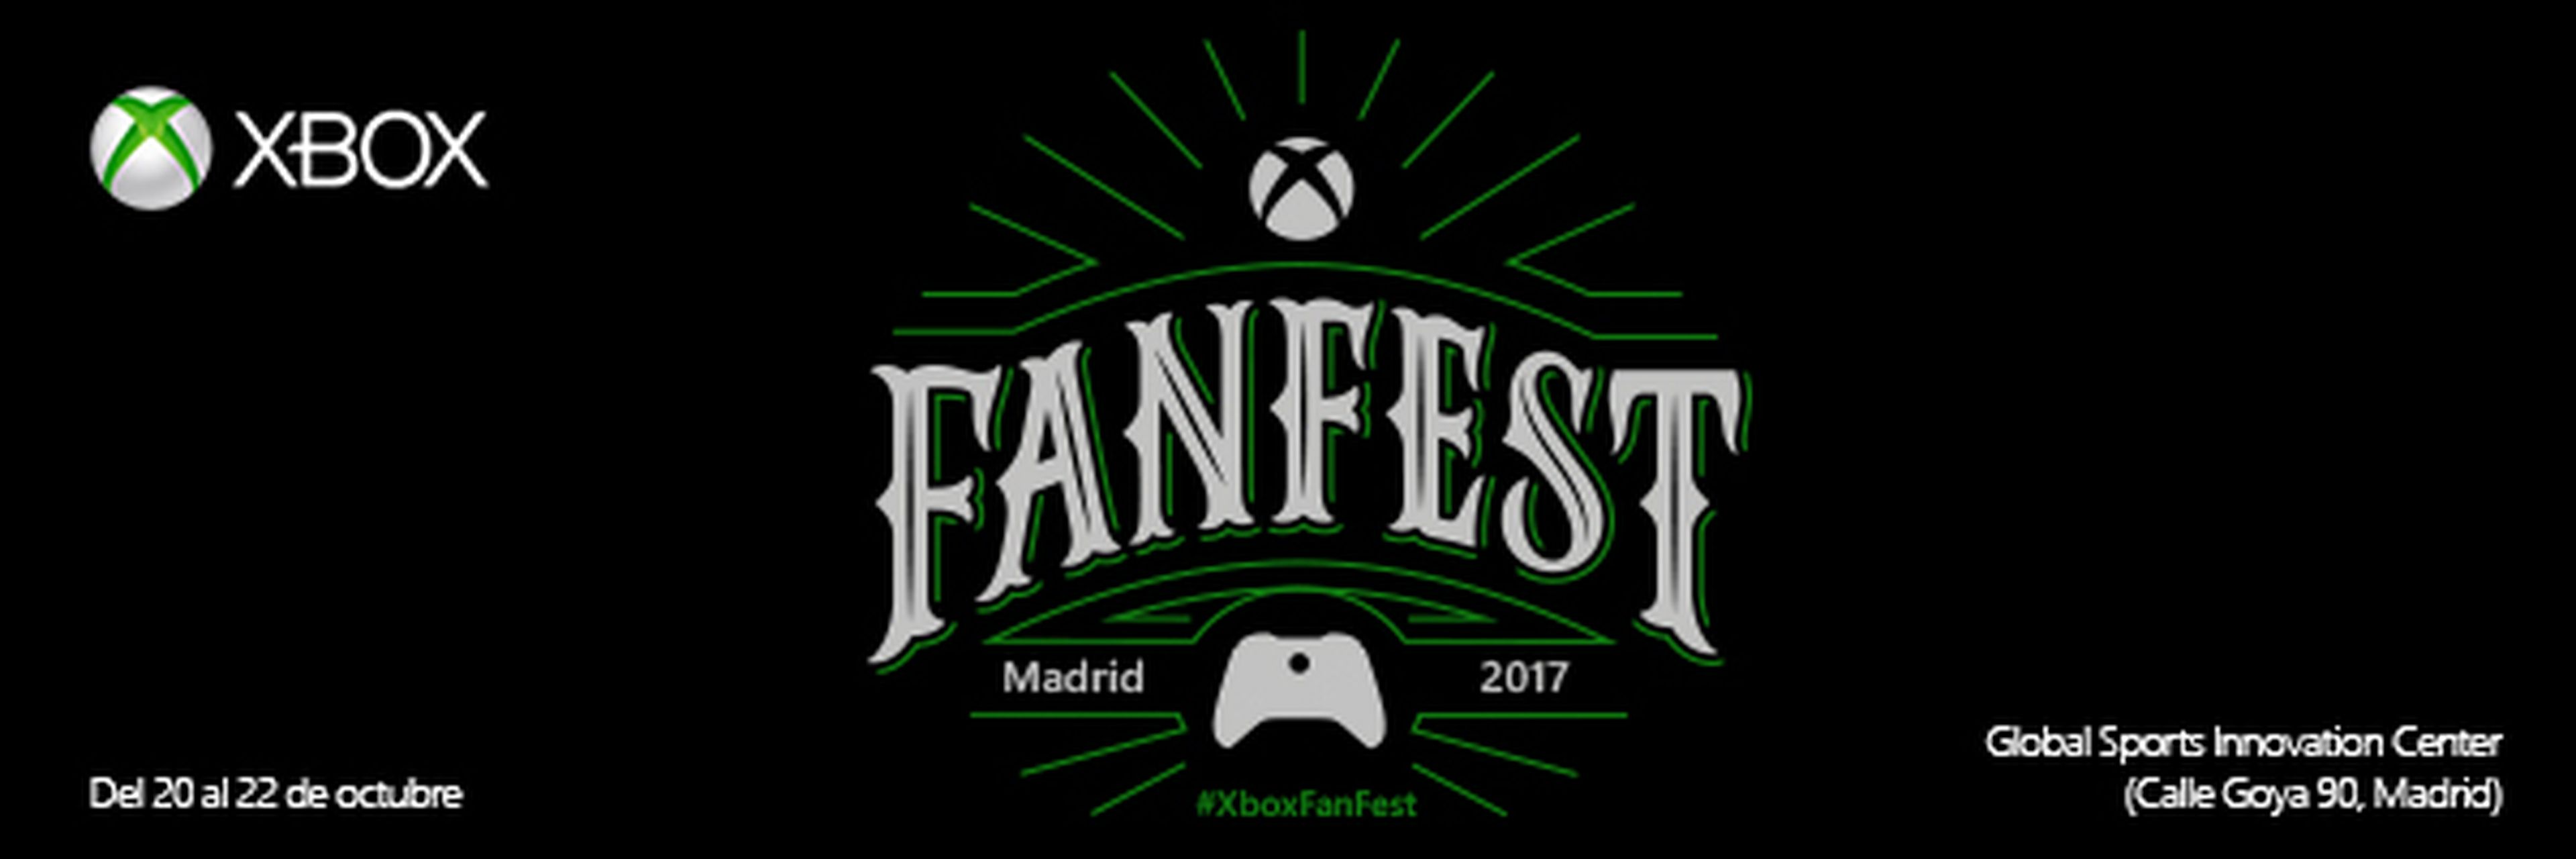 Xbox Fanfest 2017